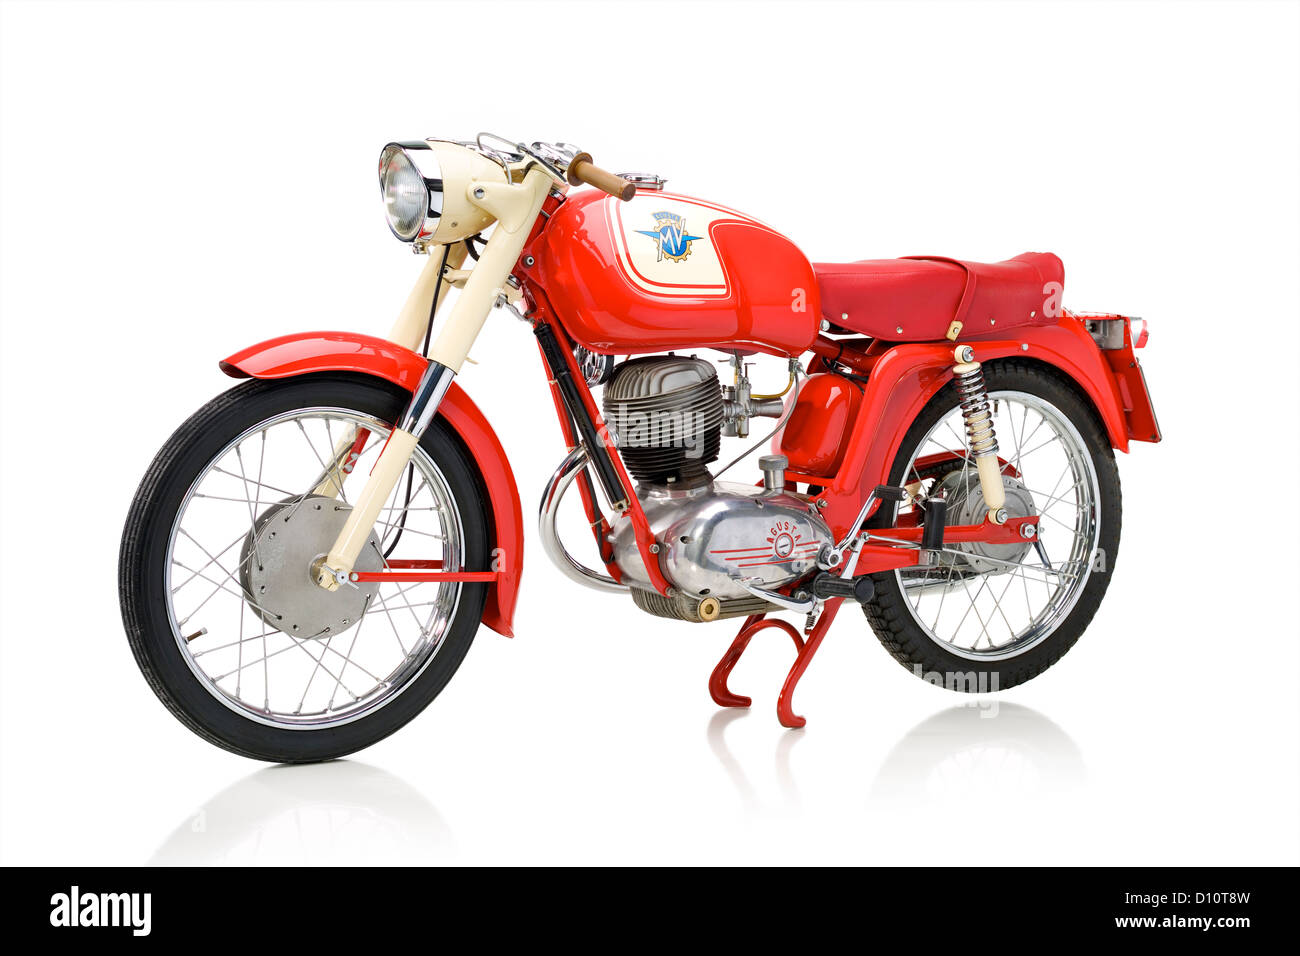 1965 MV Agusta moto RS 150 Banque D'Images